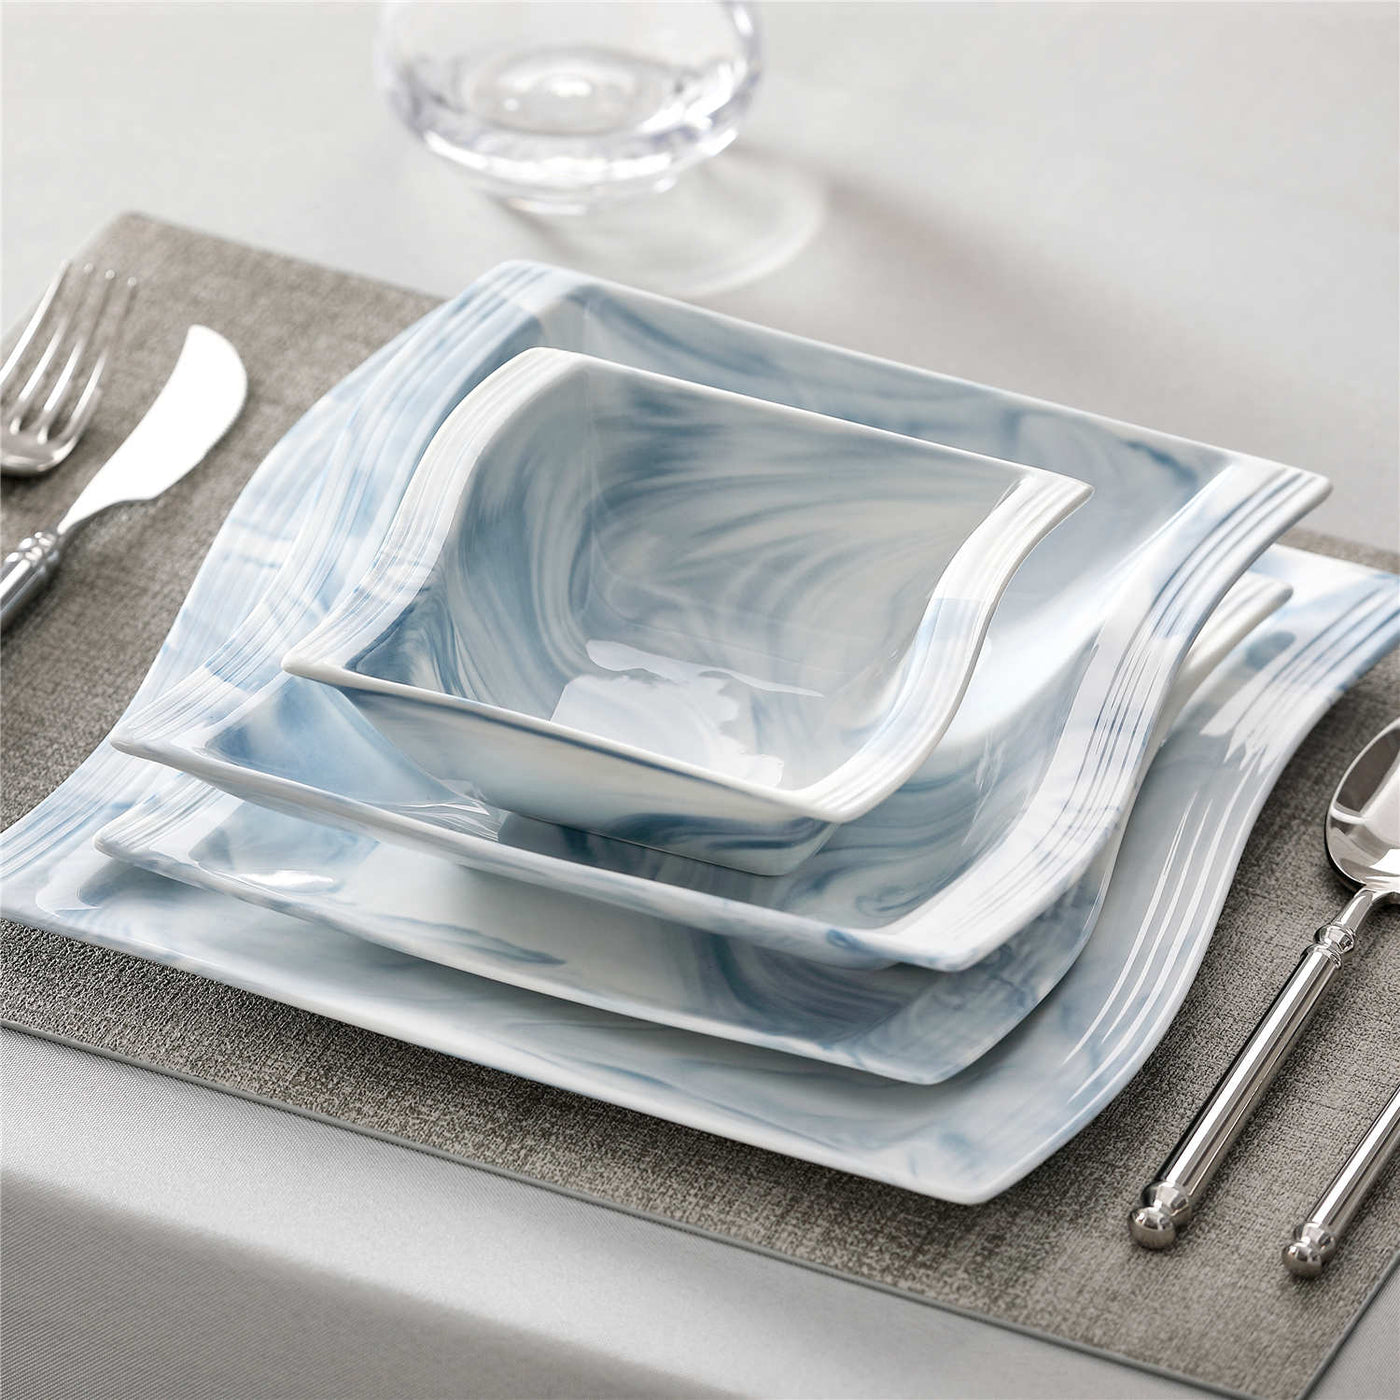 MALACASA, Flora Series, 8.25 Inch Soup Plates Marble Grey Porcelain Deep  Porcelain Dinner Plates Soup Bowl, Set of 6